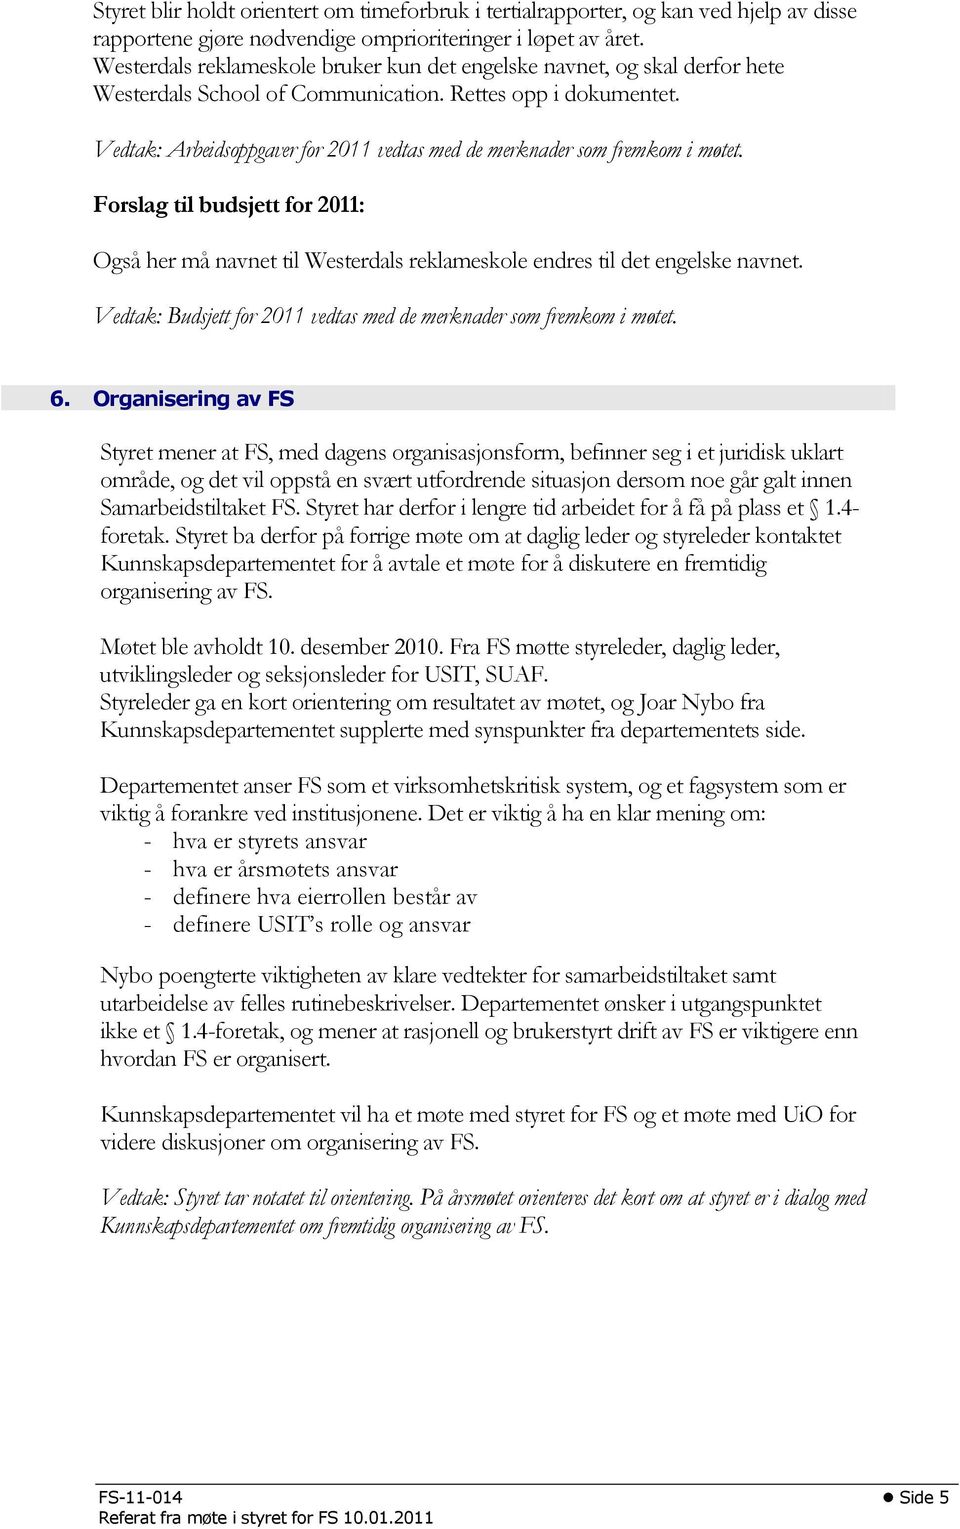 Vedtak: Arbeidsoppgaver for 2011 vedtas med de merknader som fremkom i møtet. Forslag til budsjett for 2011: Også her må navnet til Westerdals reklameskole endres til det engelske navnet.